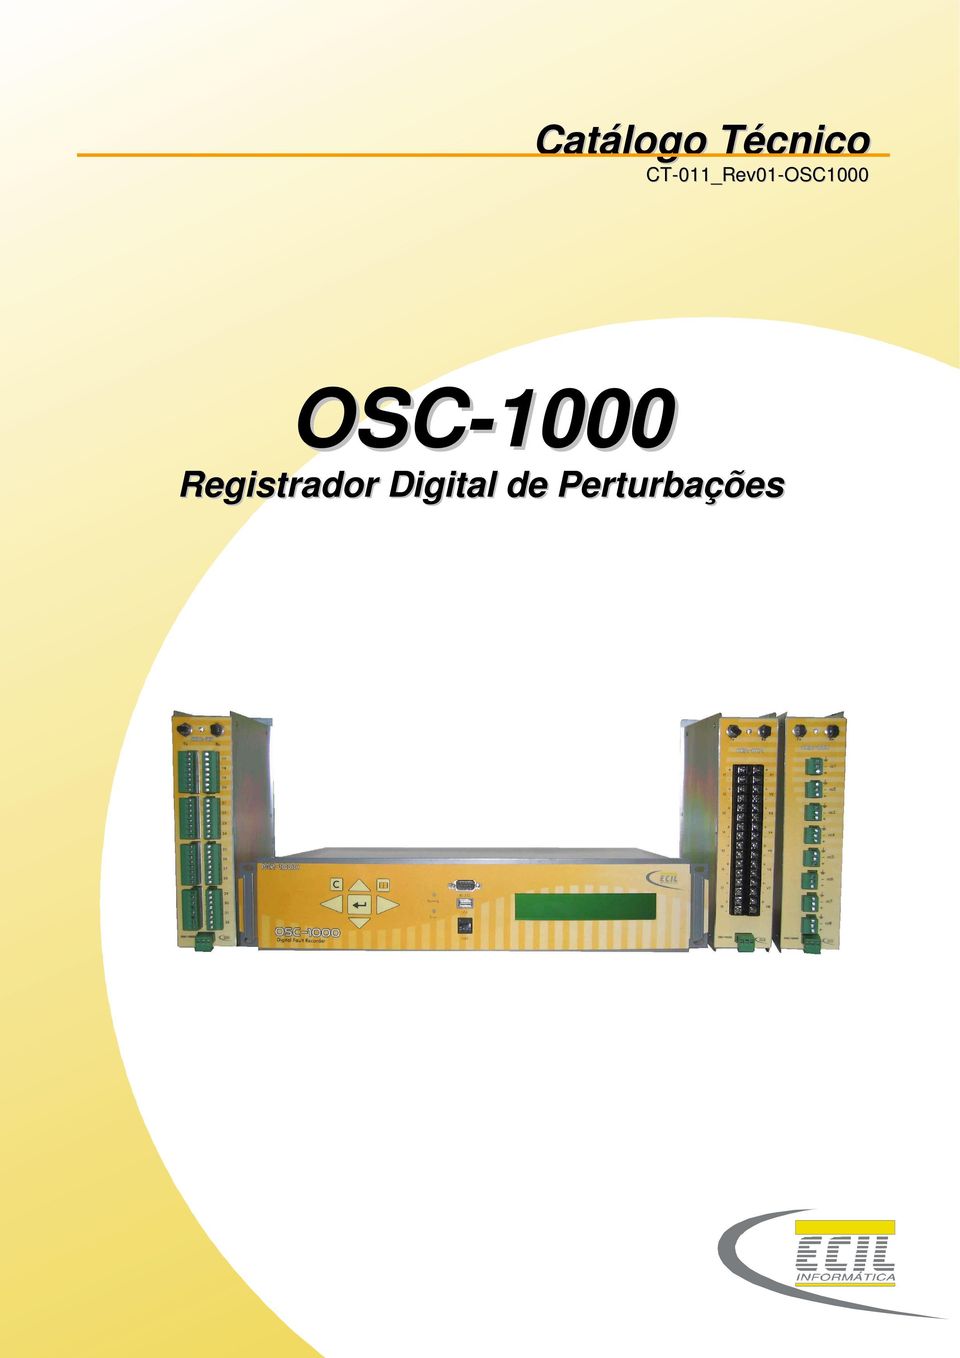 OSC-1000 Registrador